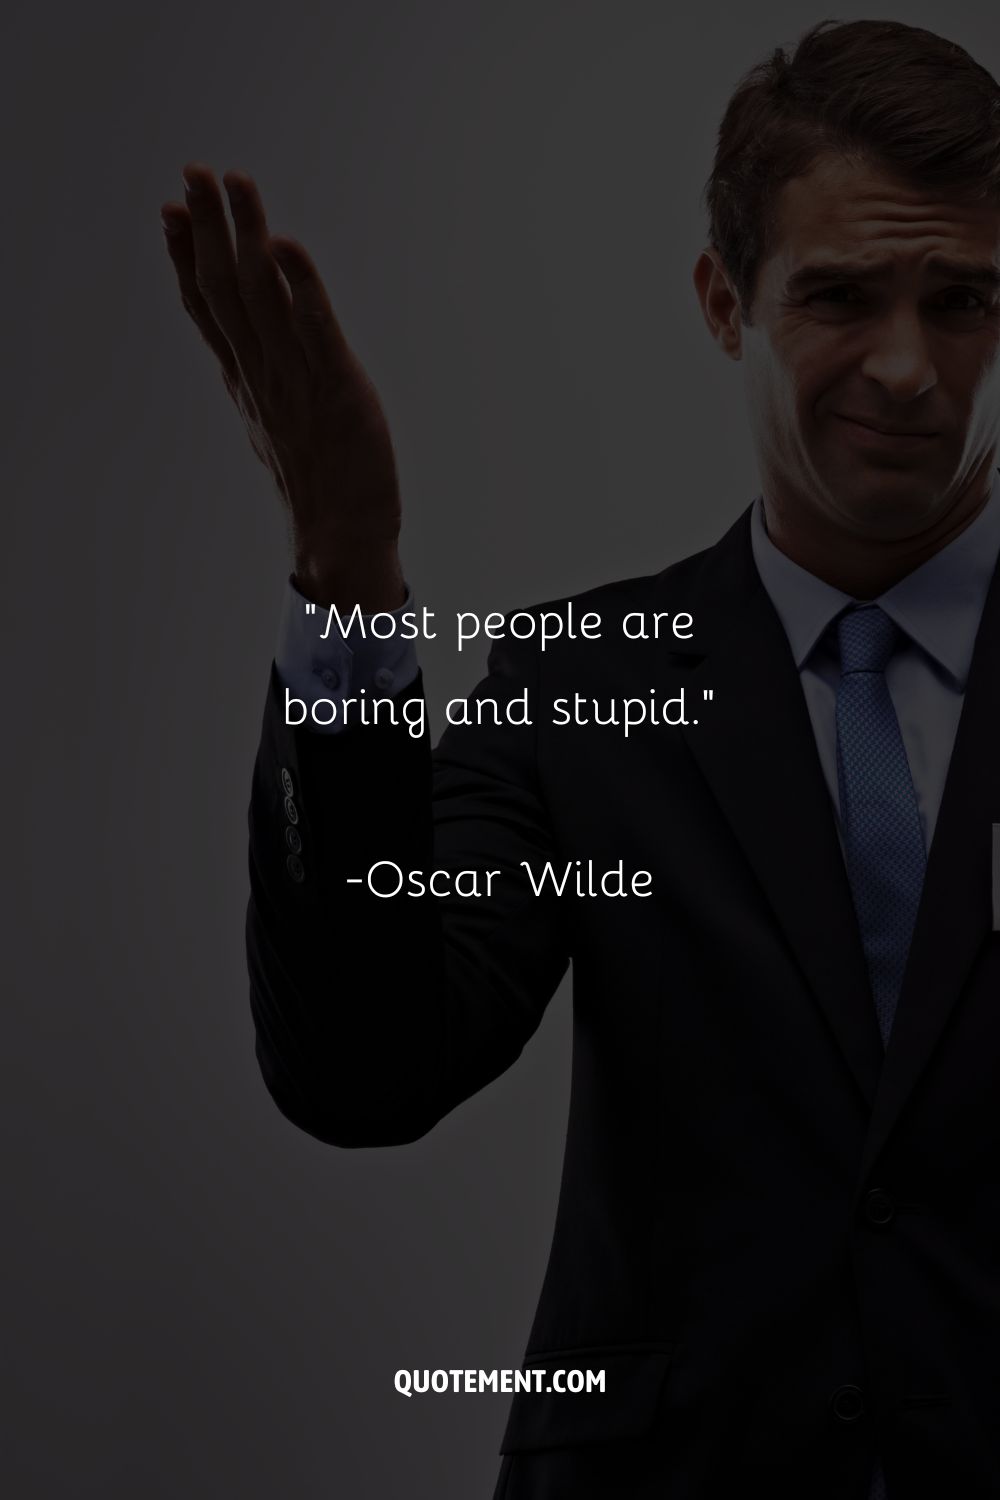 "La mayoría de la gente es aburrida y estúpida".